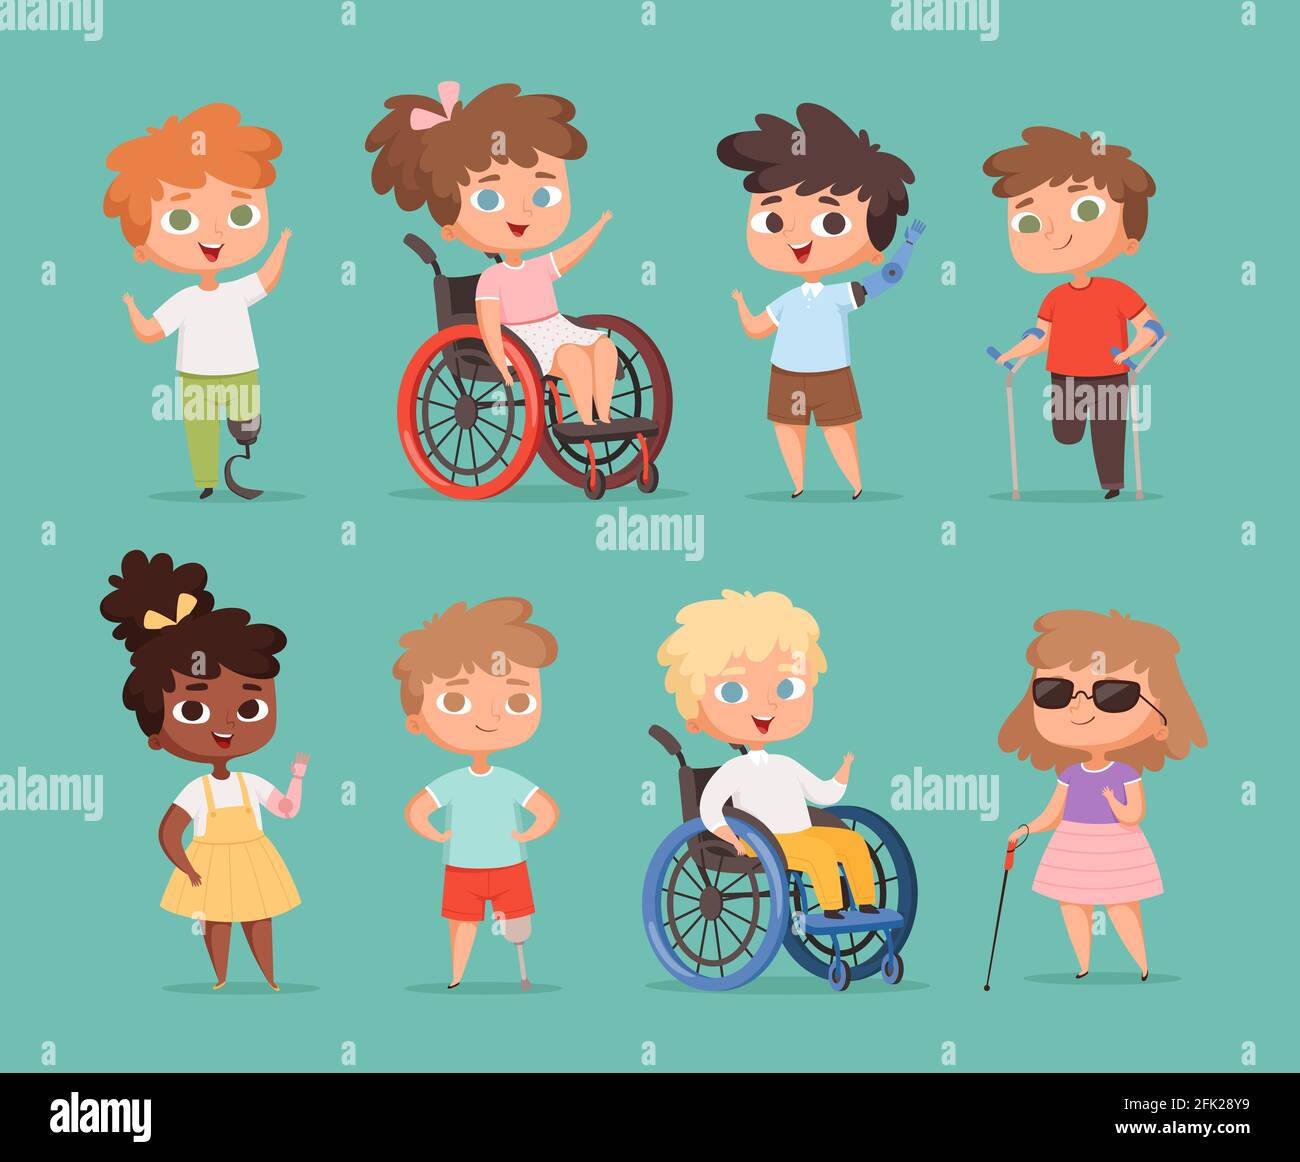 Enfants handicapés. Enfants assis en fauteuil roulant handicapés petites personnes dans des illustrations de dessins animés vectorielles scolaires Illustration de Vecteur